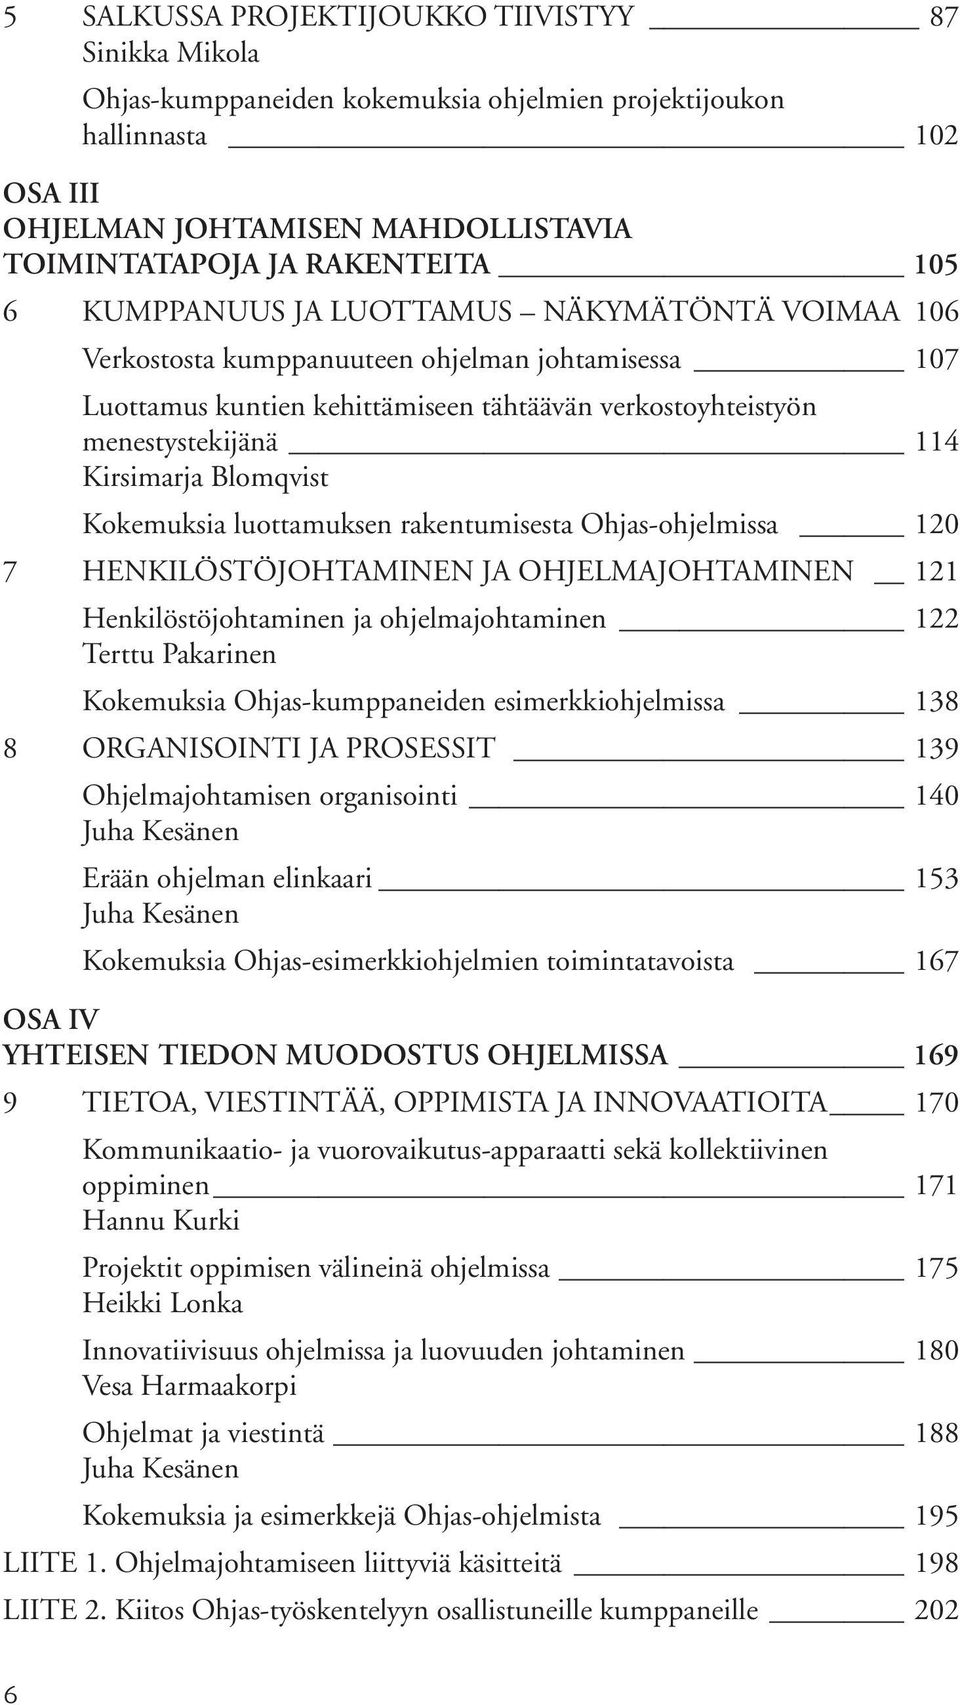 Blomqvist Kokemuksia luottamuksen rakentumisesta Ohjas-ohjelmissa 120 7 HENKILÖSTÖJOHTAMINEN JA OHJELMAJOHTAMINEN 121 Henkilöstöjohtaminen ja ohjelmajohtaminen 122 Terttu Pakarinen Kokemuksia